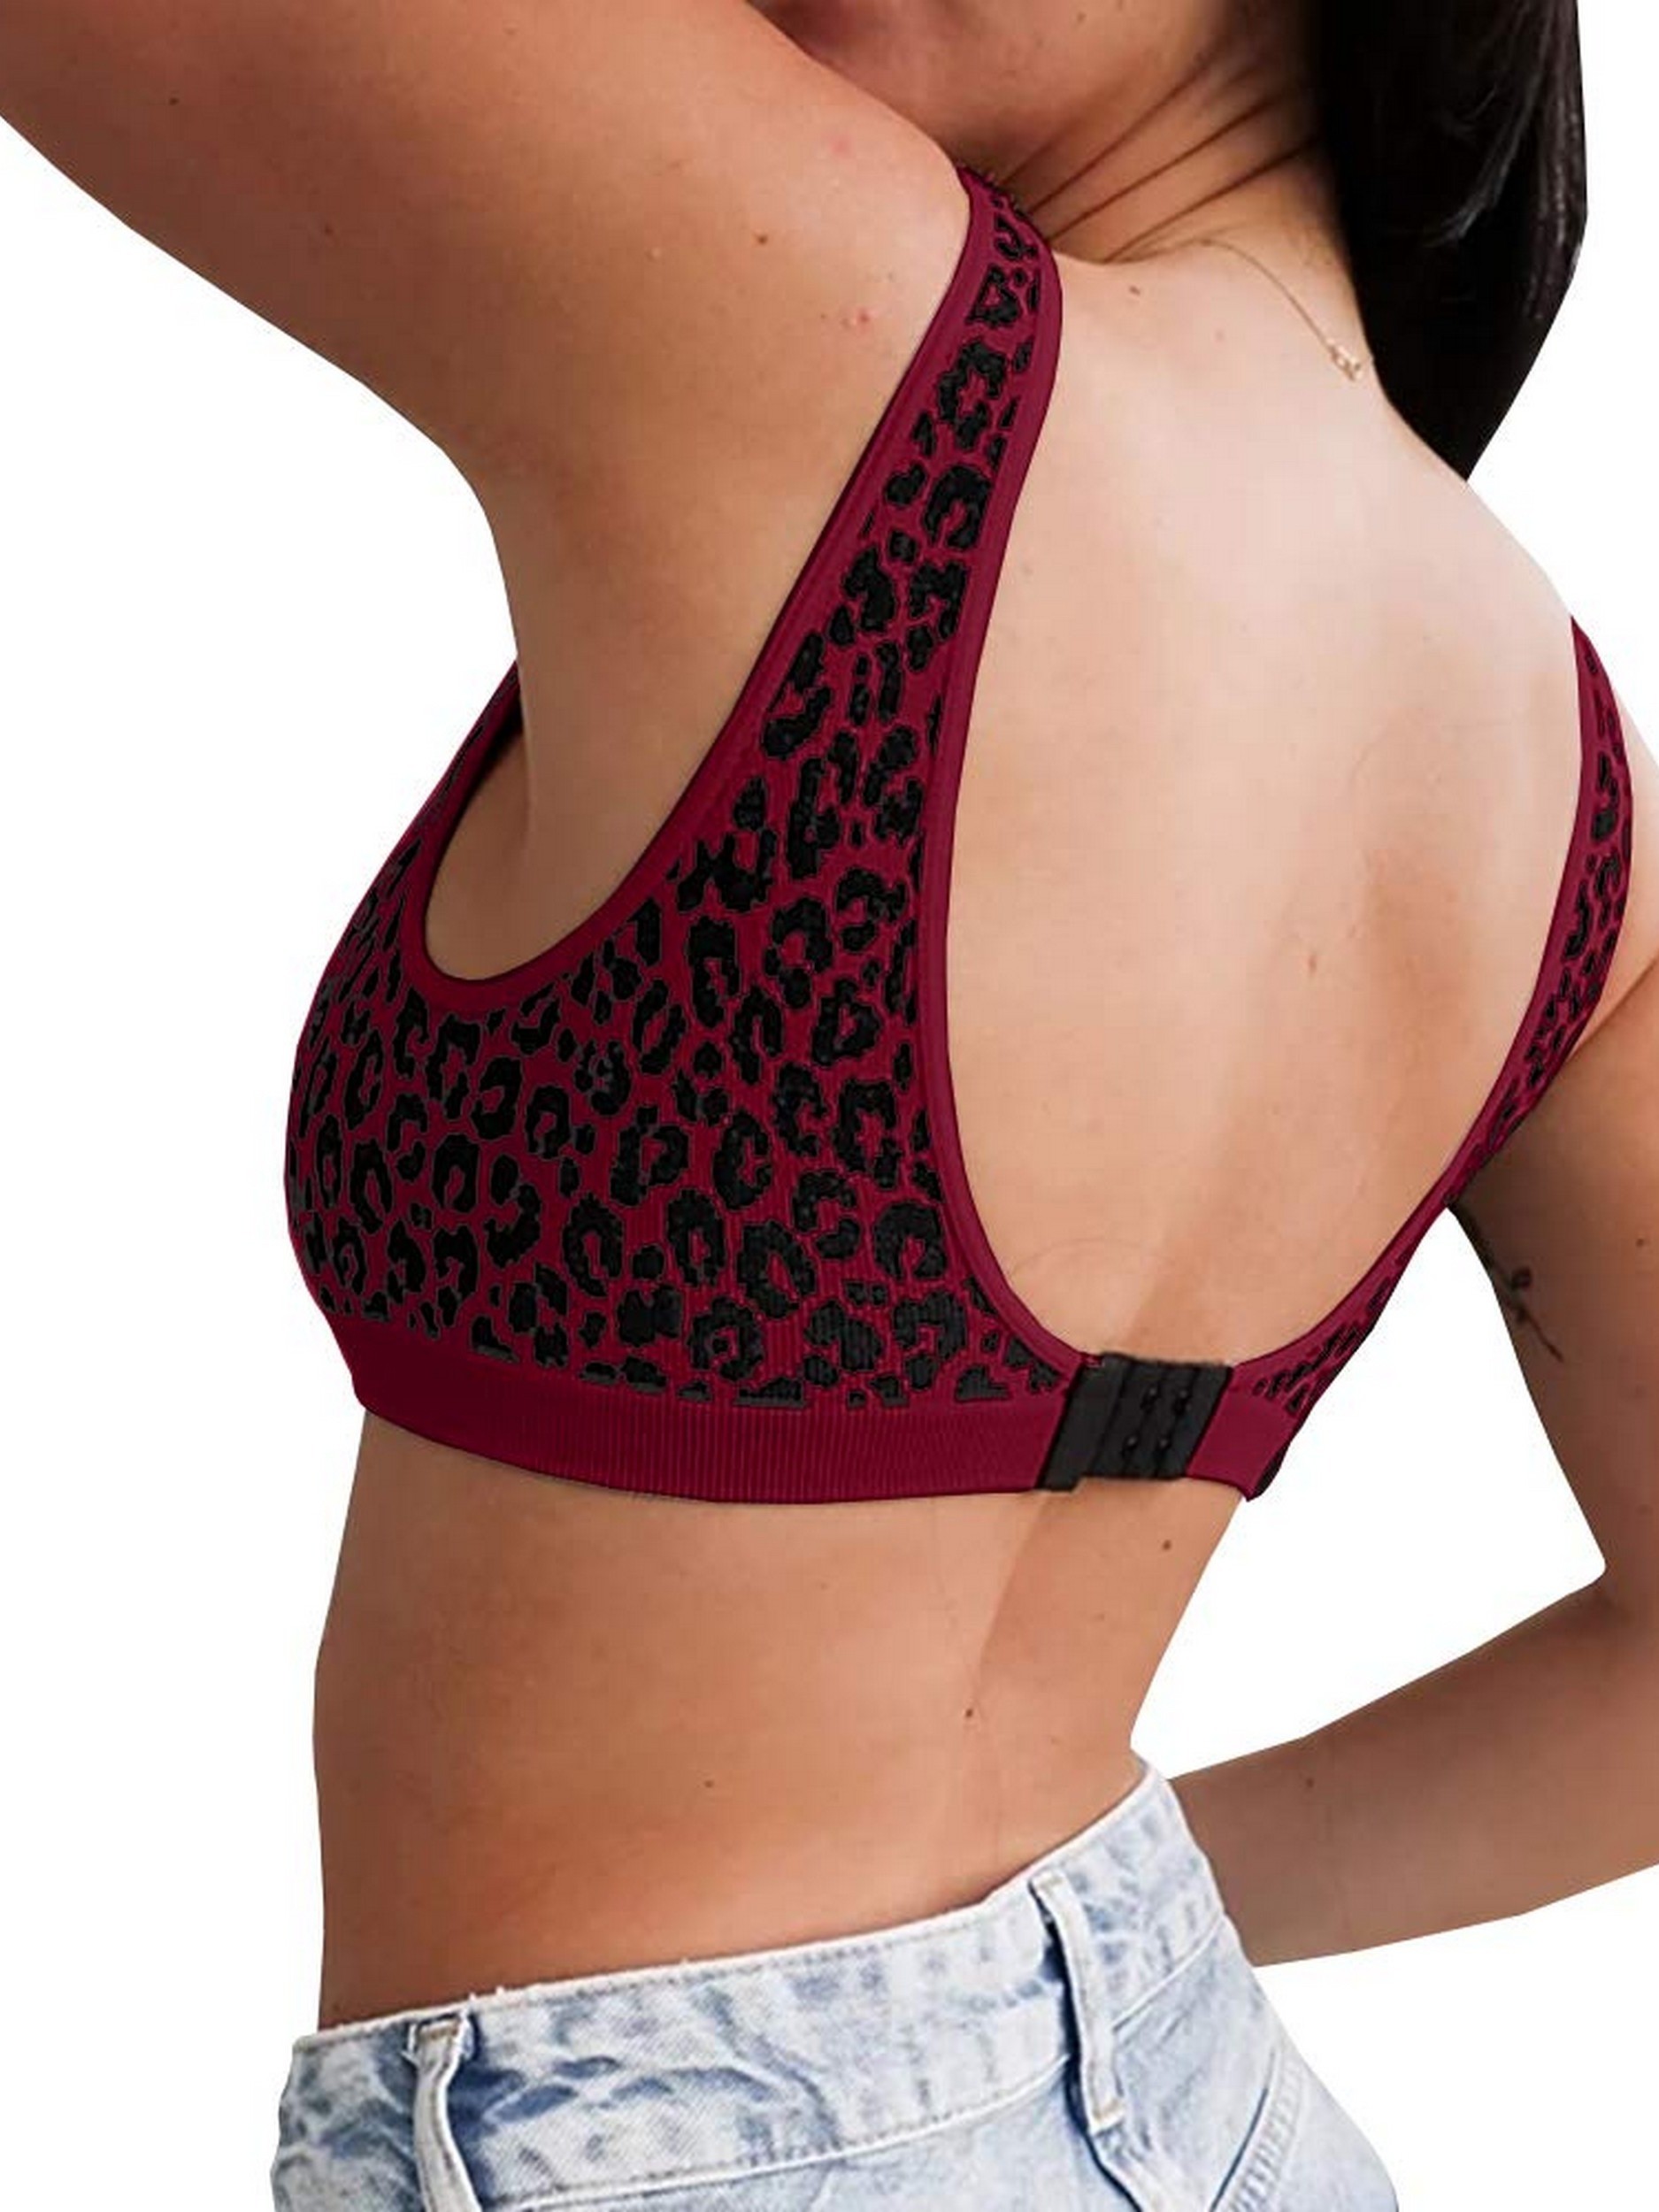 3pcs Leopard Wireless Bras, Comfy & Seamless Cut Out Bra, Women's Lingerie  & Underwear